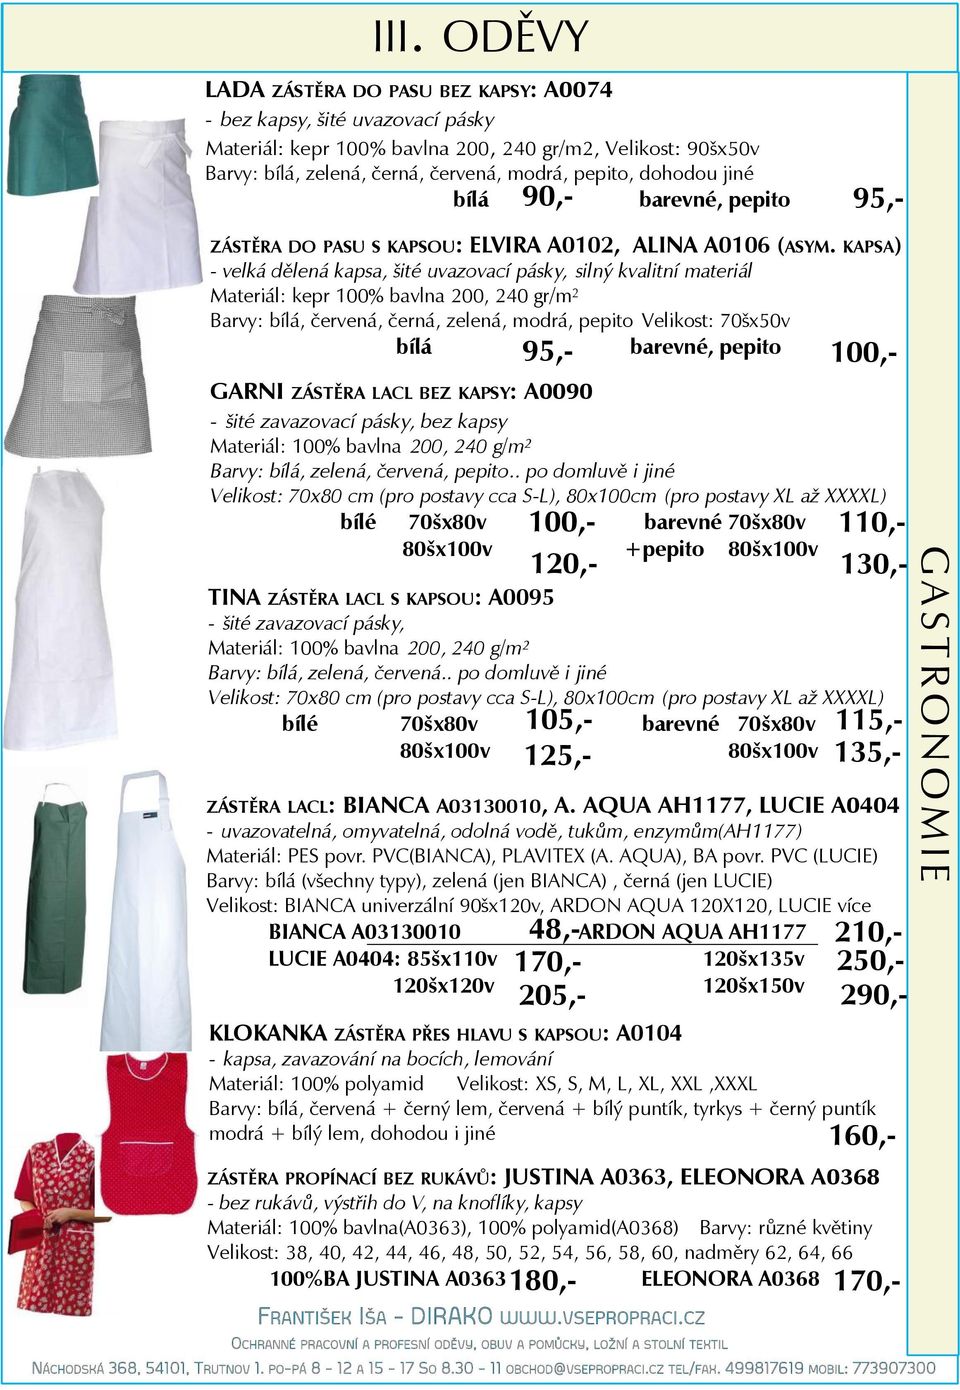 KAPSA) - velká dělená kapsa, šité uvazovací pásky, silný kvalitní materiál Materiál: kepr 100% bavlna 200, 240 gr/m 2 Barvy: bílá, červená, černá, zelená, modrá, pepito Velikost: 70šx50v bílá 95,-